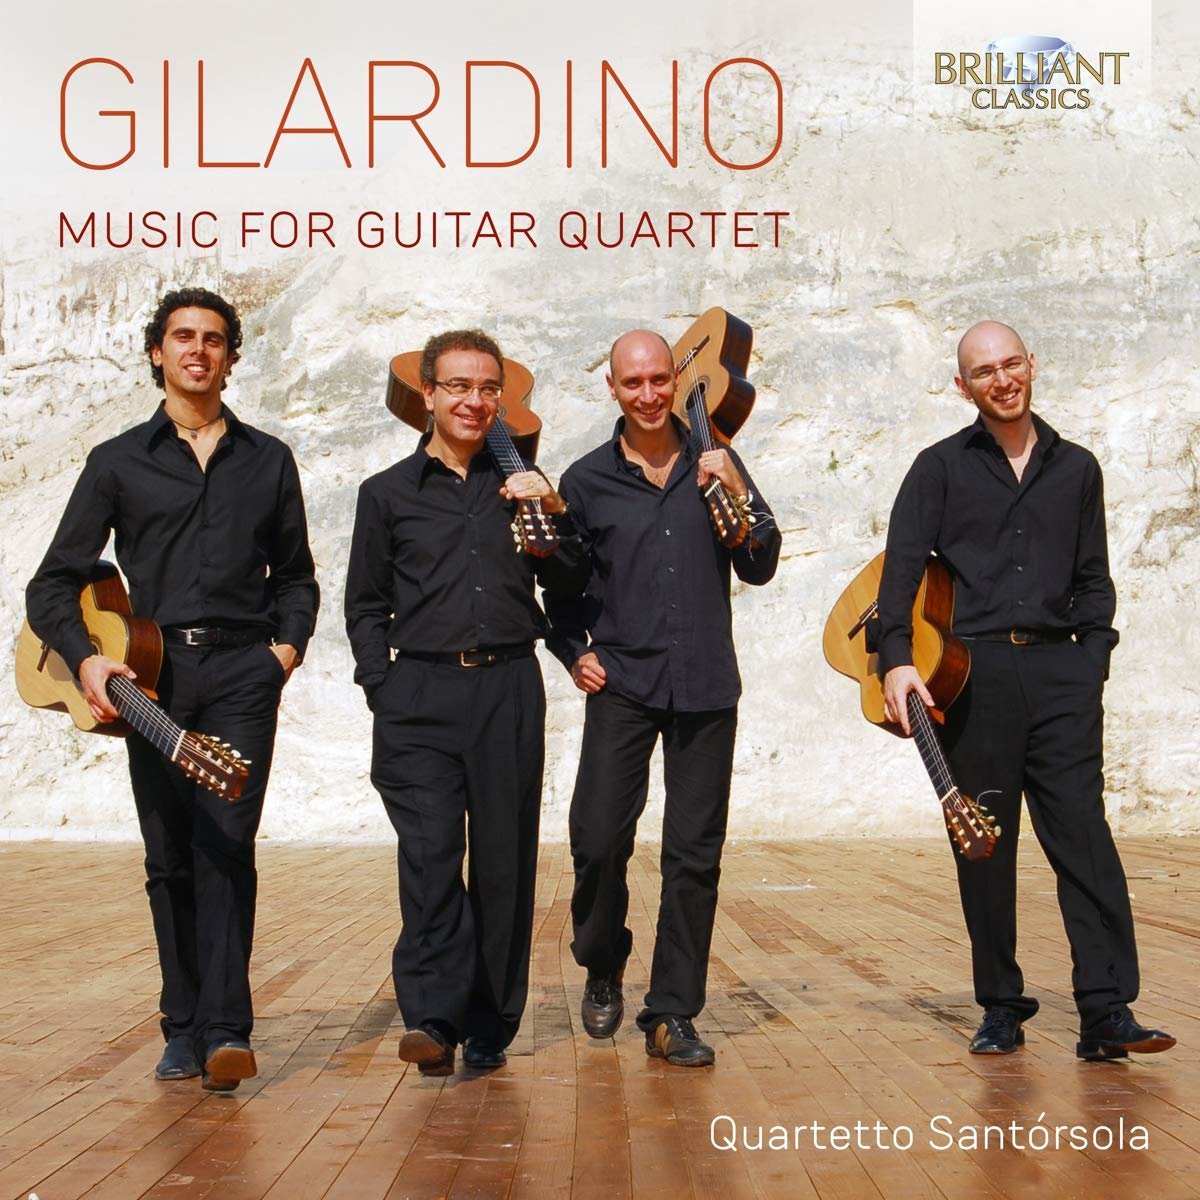 Gilardino: Music for Guitar Quartet, Quartetto Santorsola